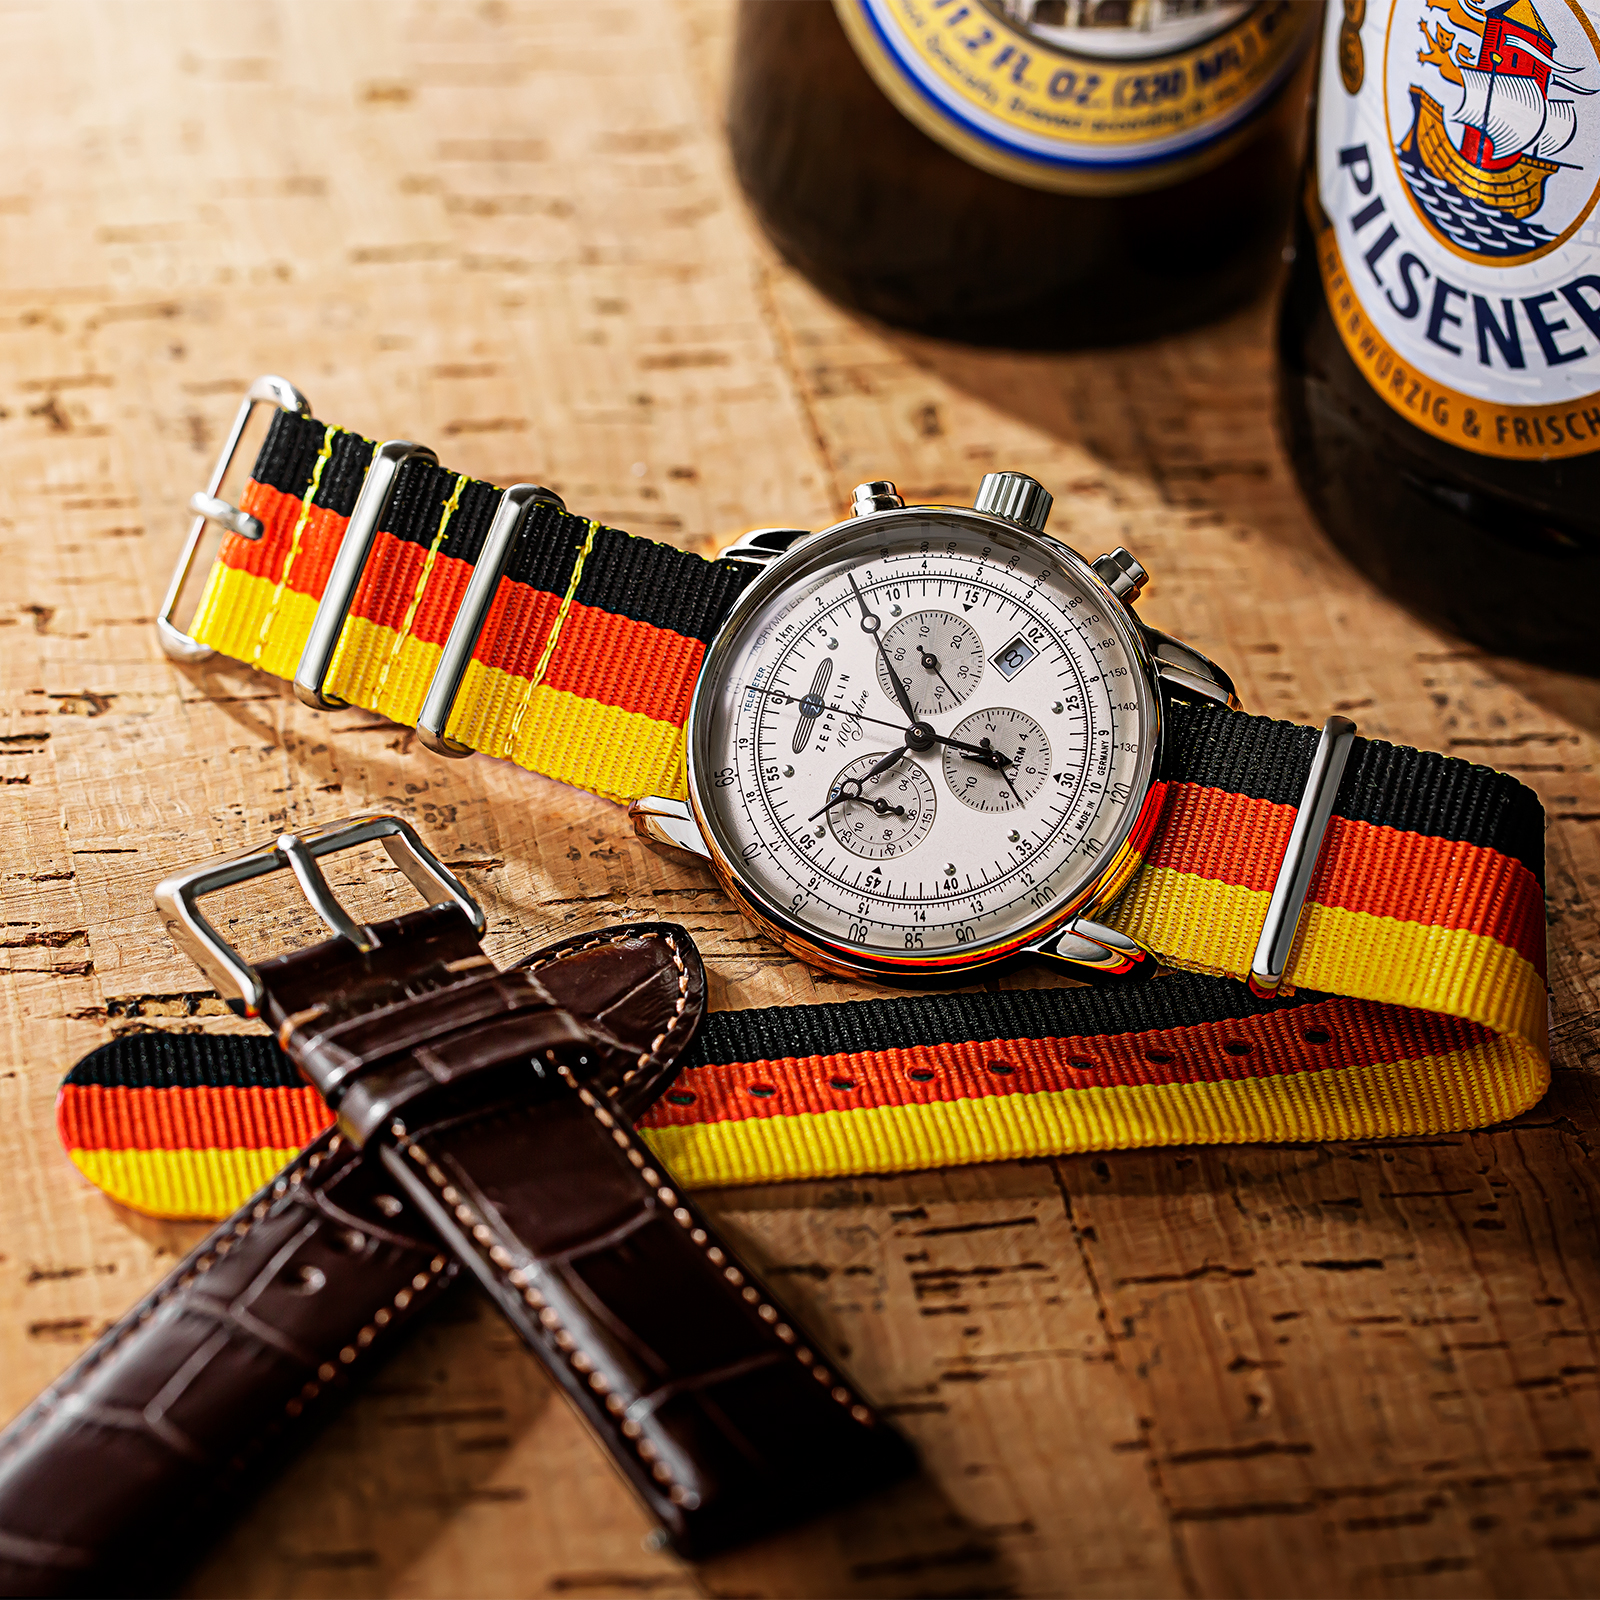 腕時計ブランド「ZEPPELIN(ツェッペリン)」がドイツ色の限定 